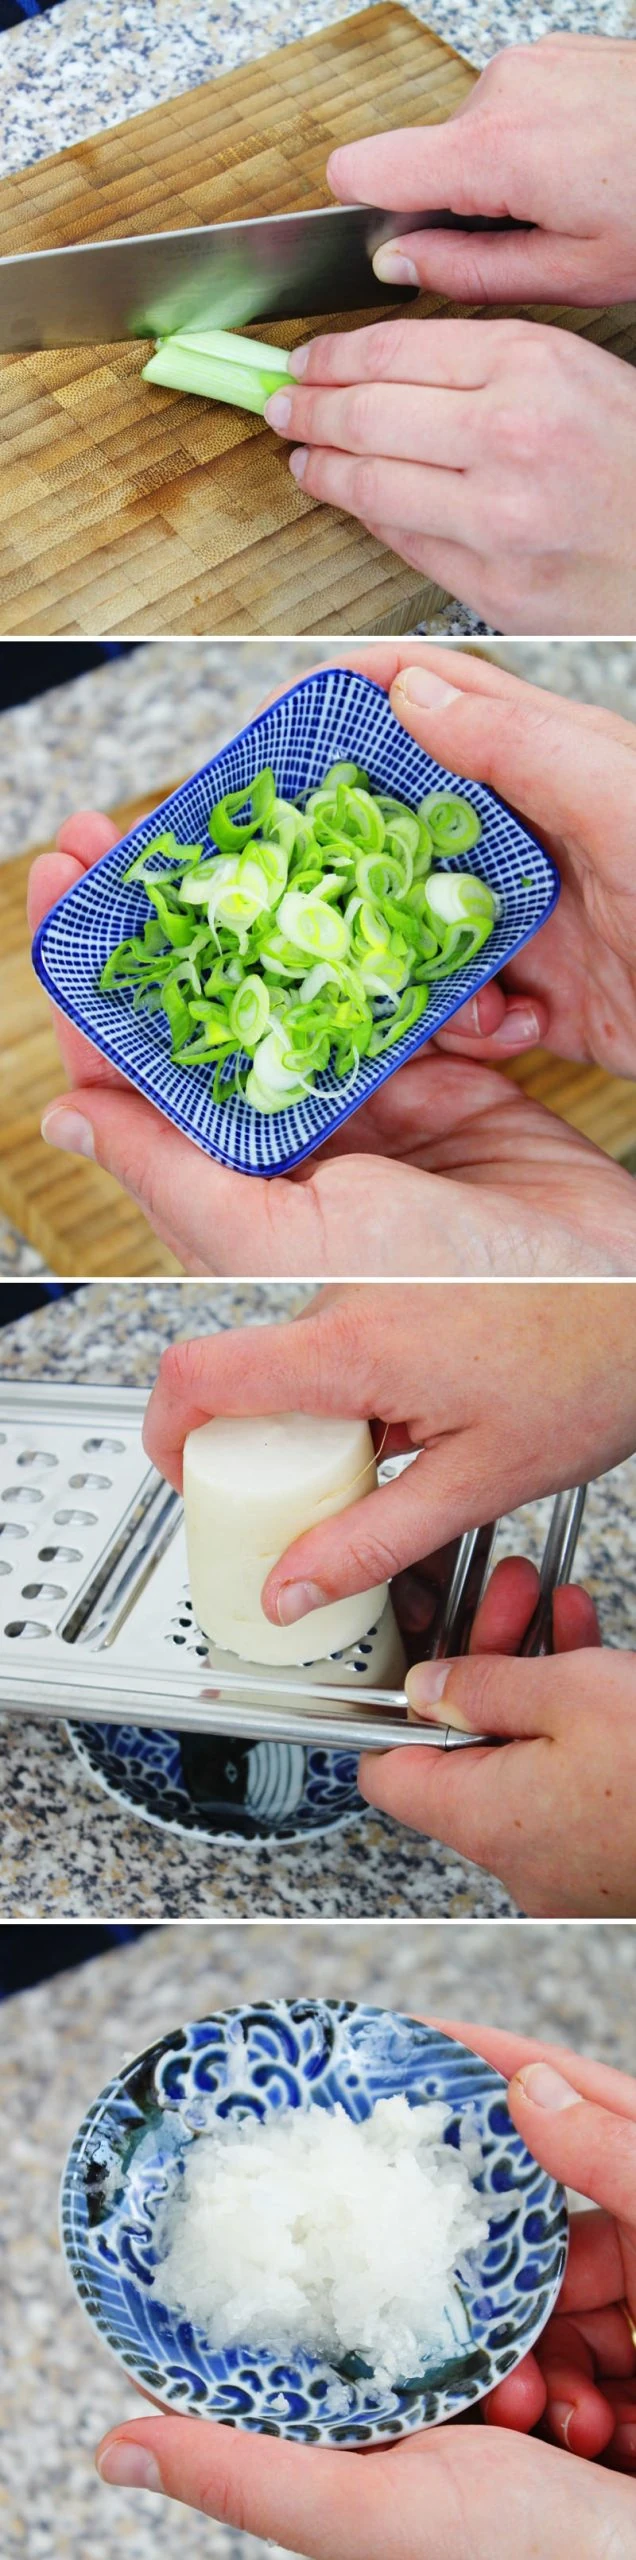 Agedashi Tofu Schritt 4 Gemüse vorbereiten